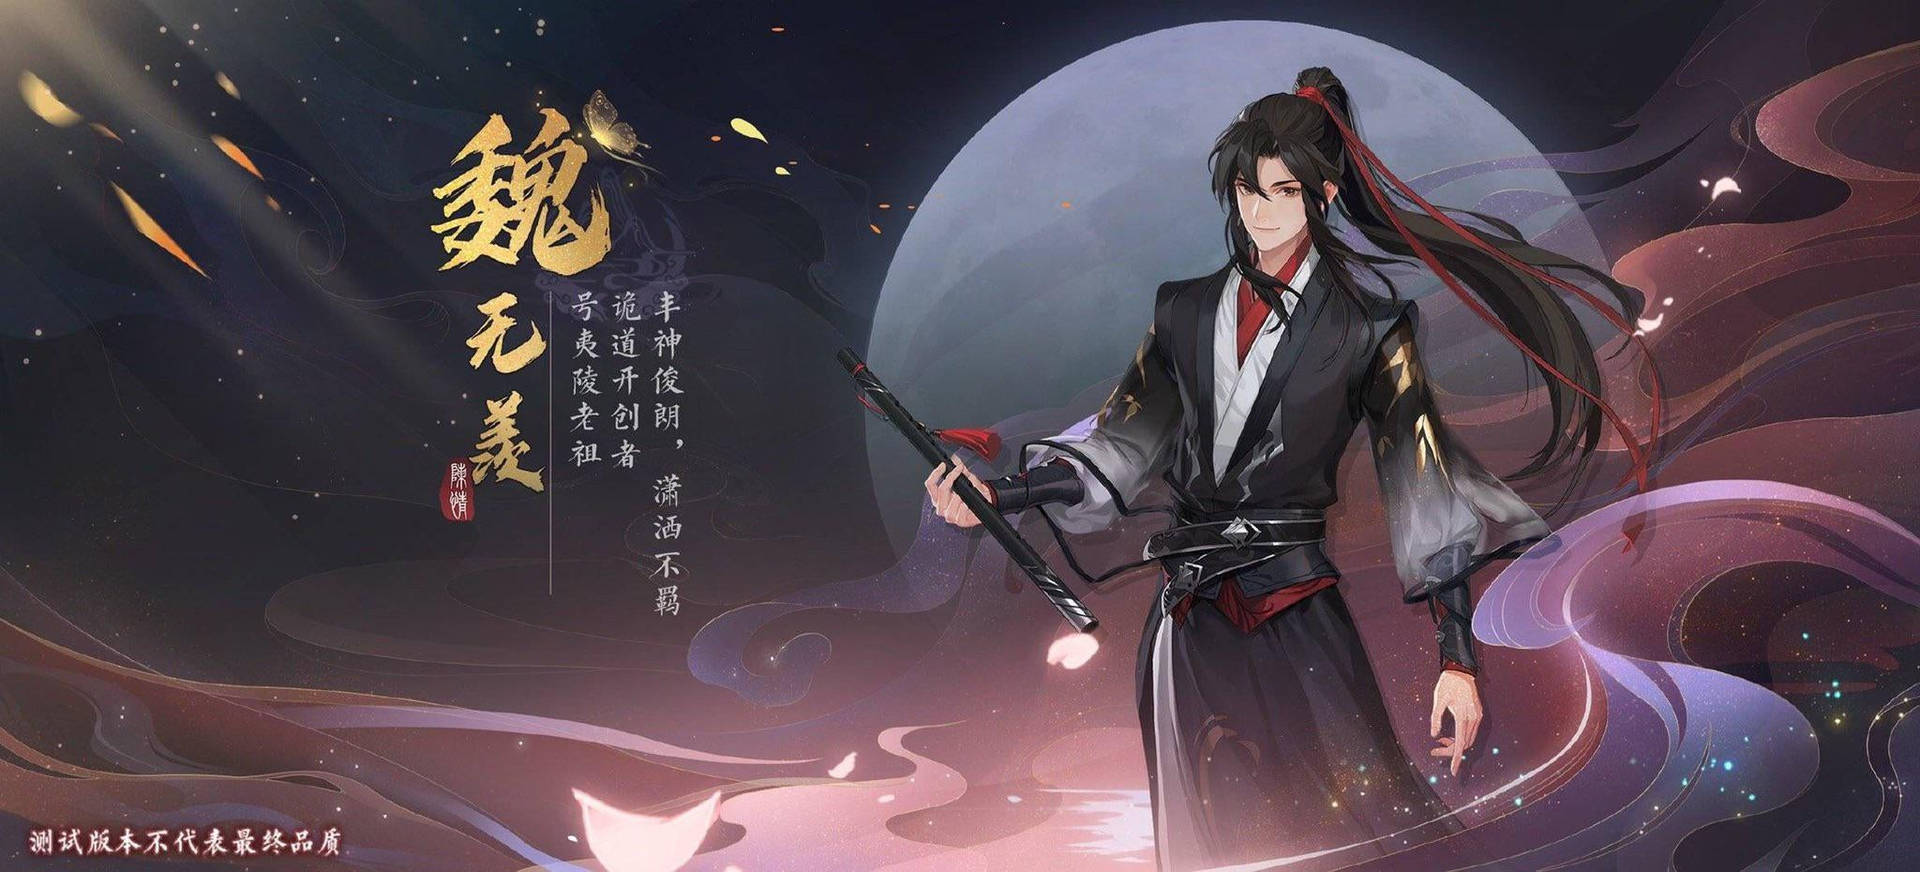 Mo Dao Zu Shi Wei Wuxian Game Poster Background